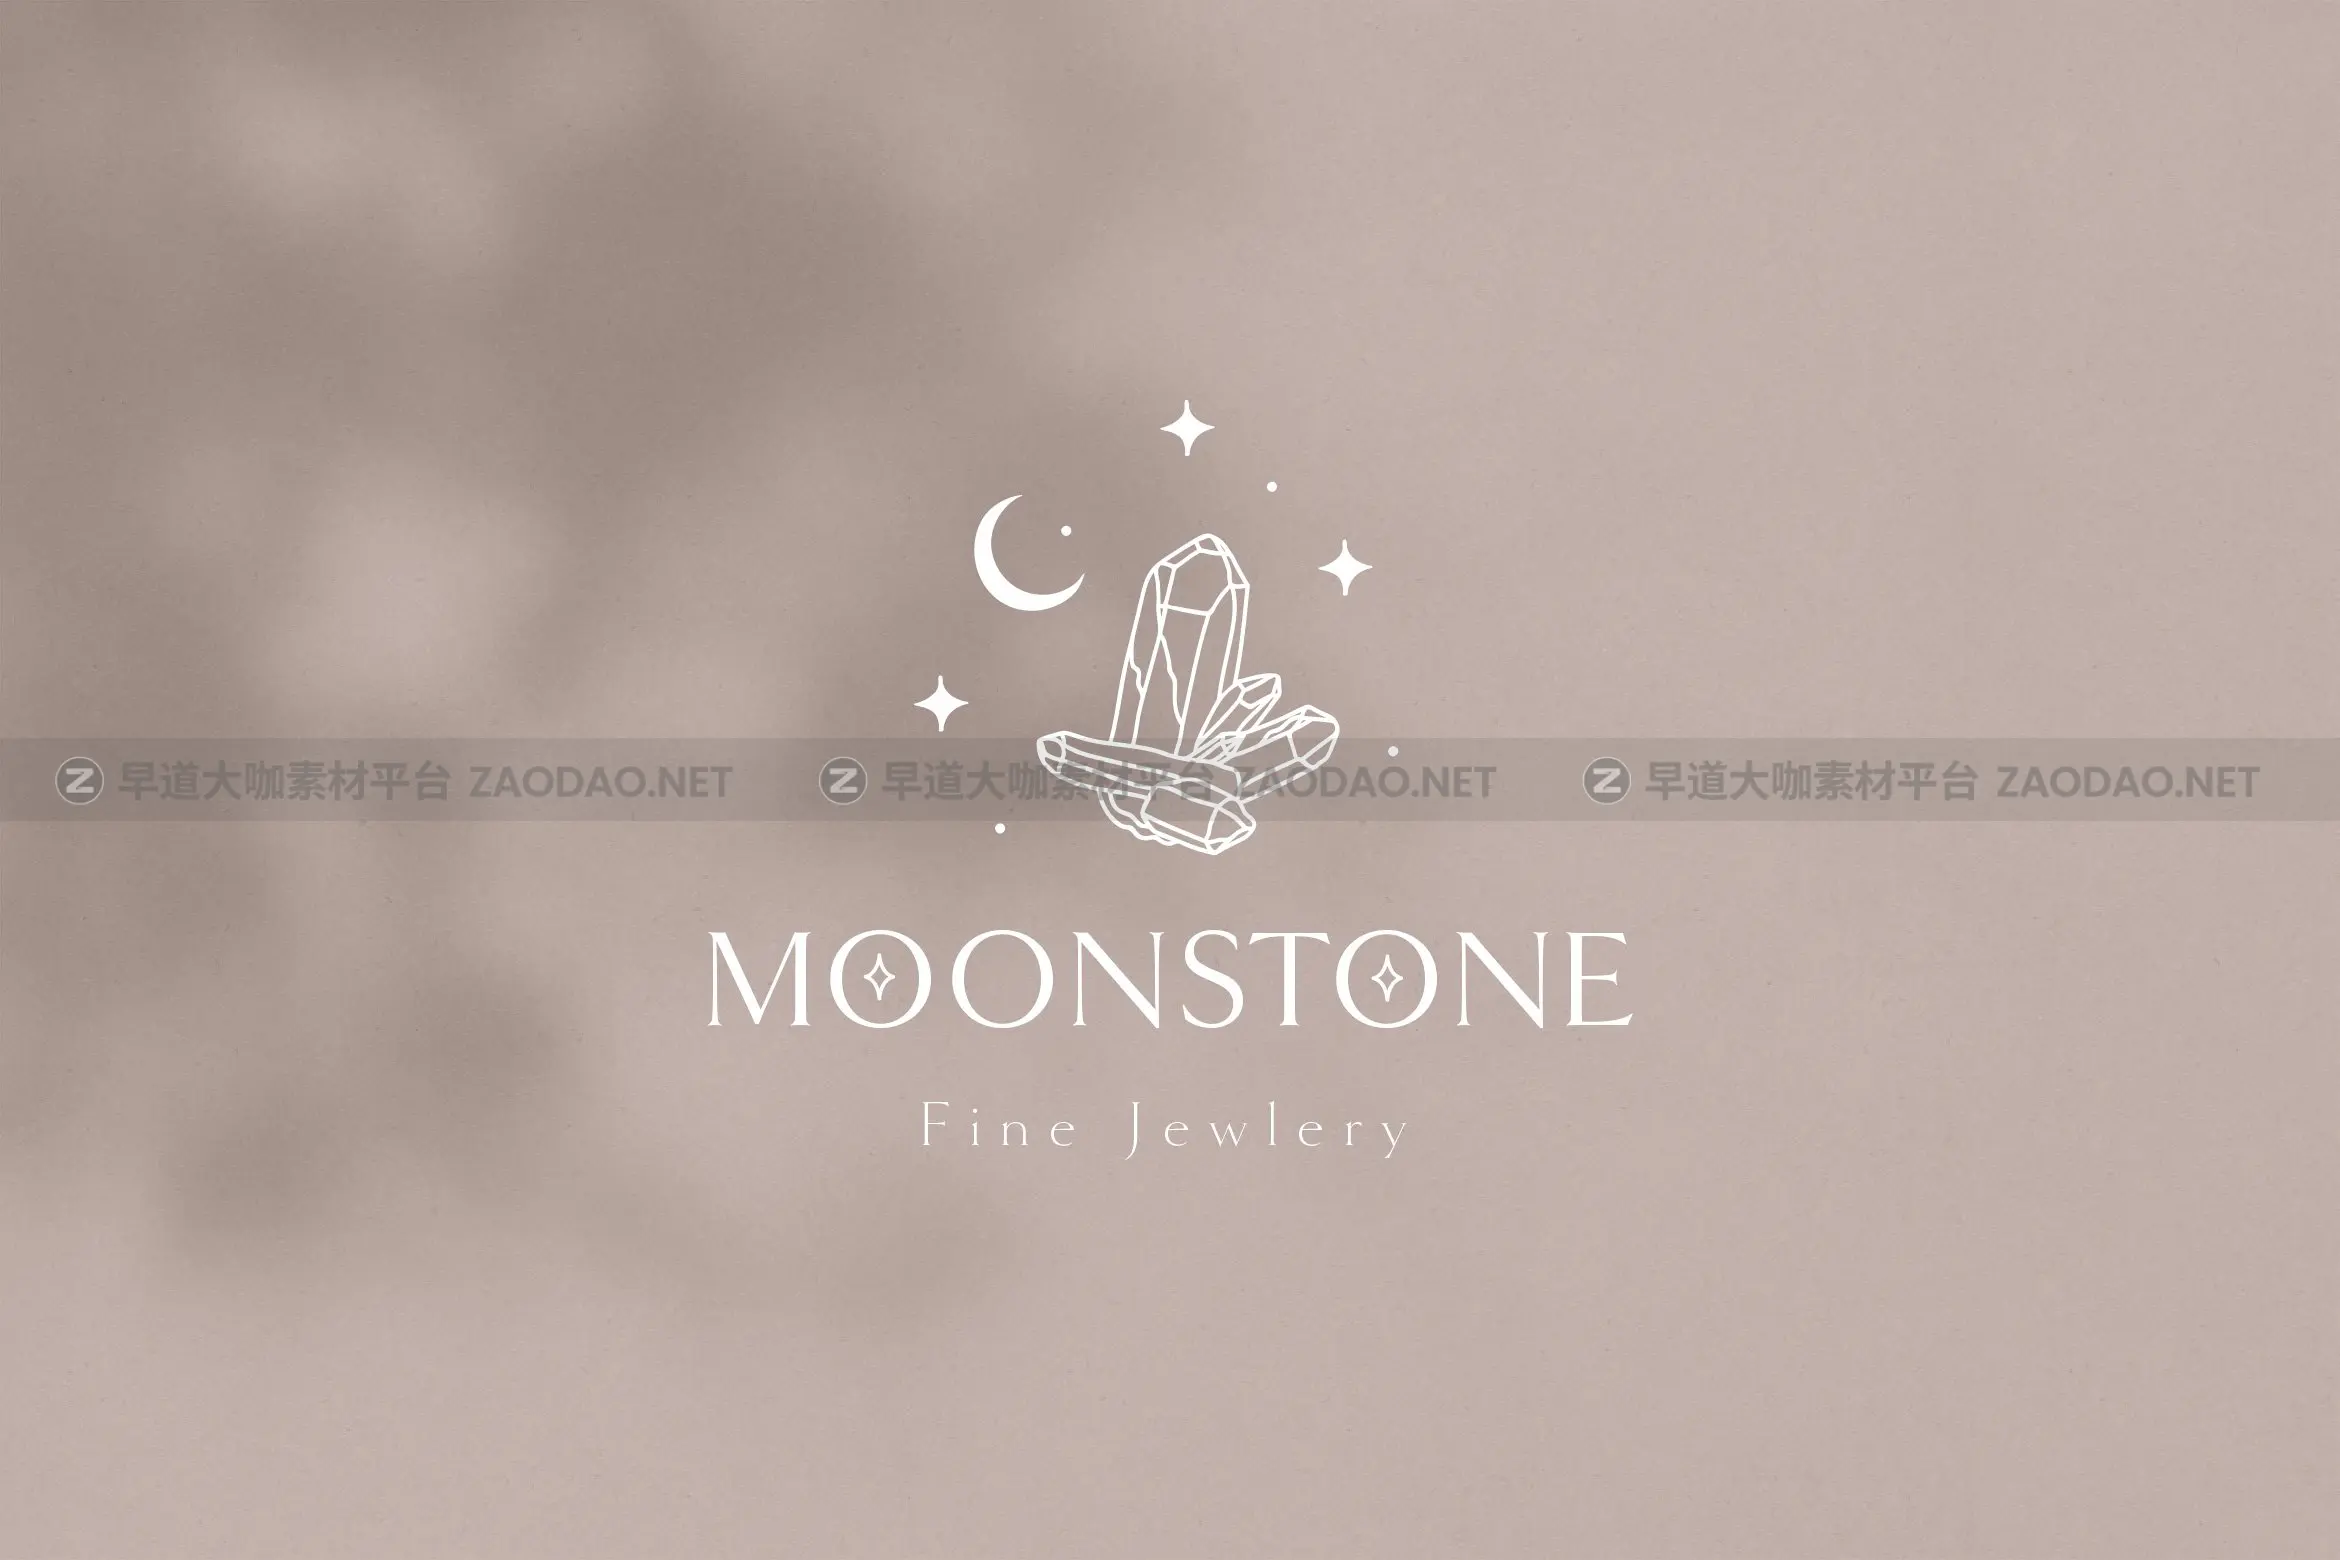 时尚优雅奢华珠宝瑜伽摄影花店徽标Logo设计AI矢量素材 Moon Stone Premade Brand Logo Design插图7